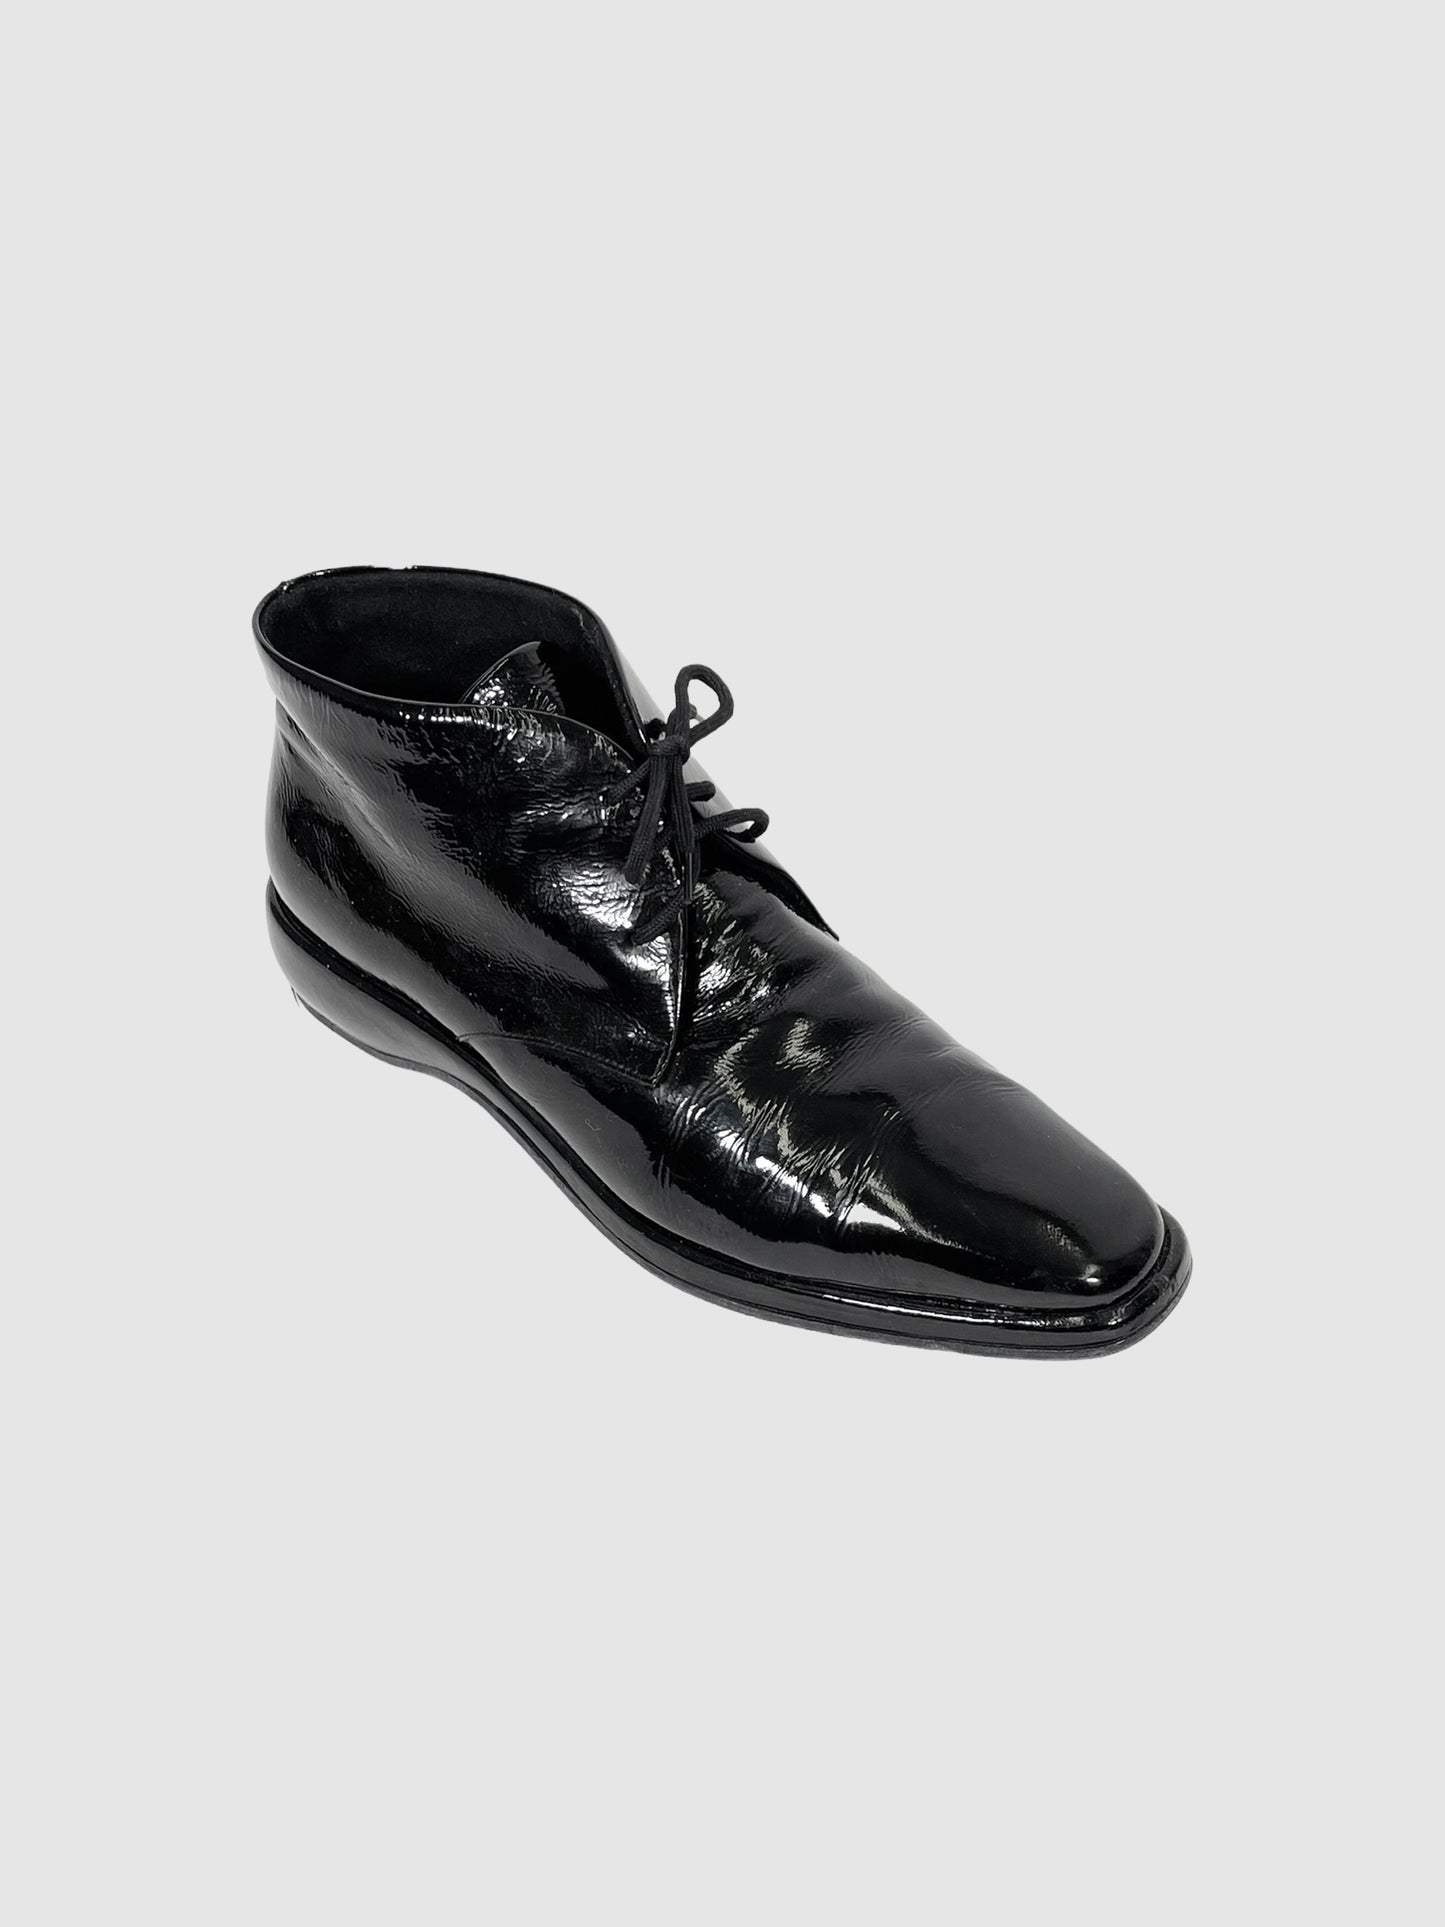 Salvatore Ferragamo Patent Lace-Up Oxford Shoes - Size 10.5